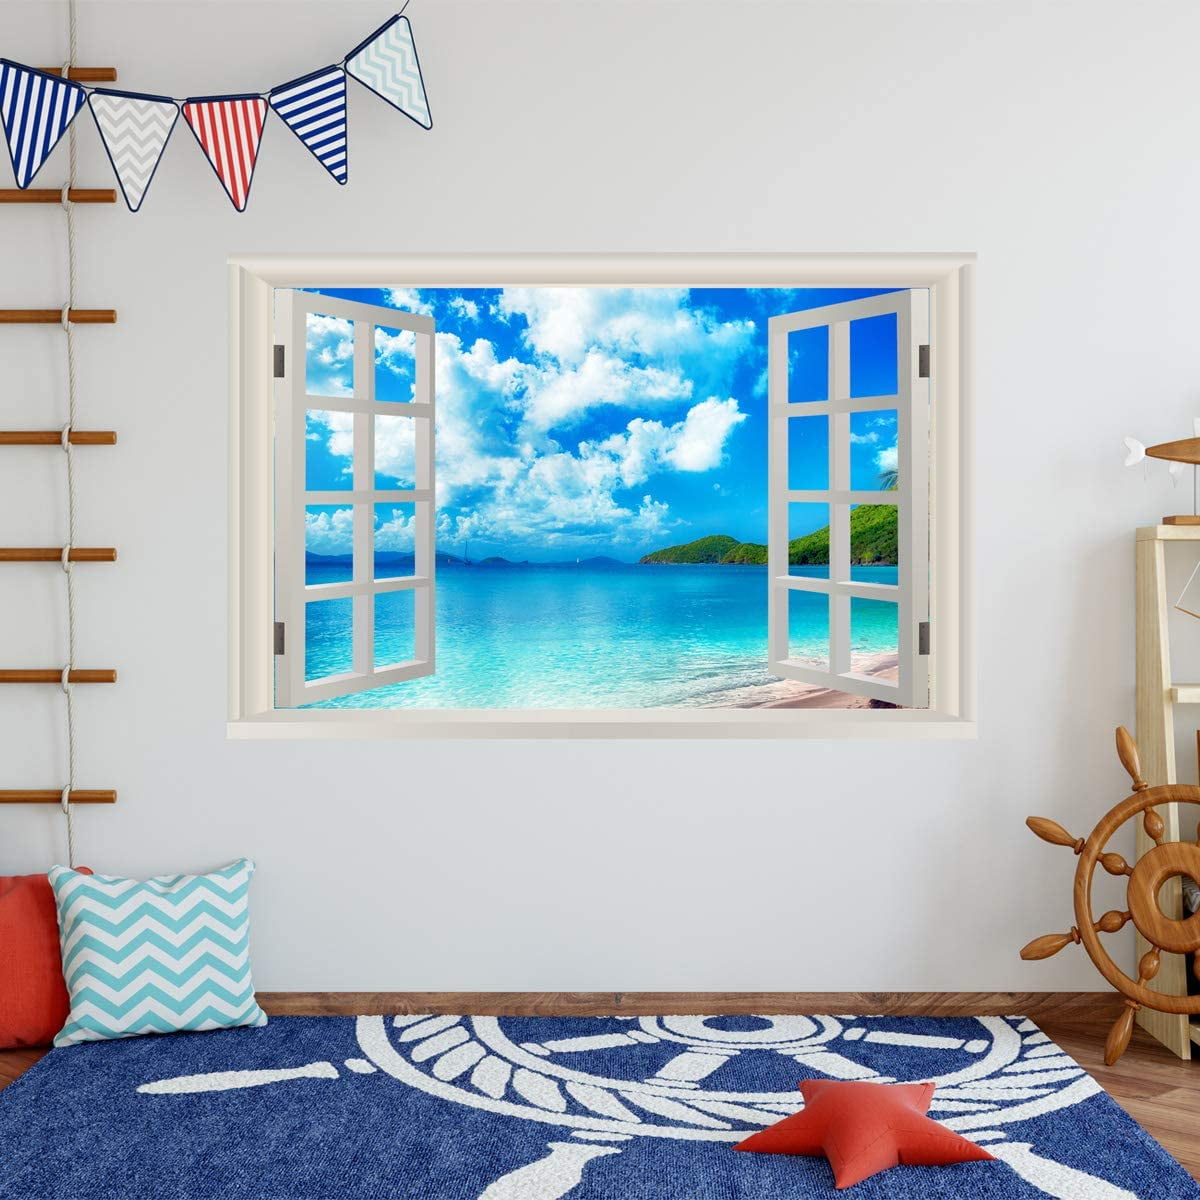 Palm Beach resort View Wall Sticker Art PVC Decal Room Decor Mural 3D Window XXL